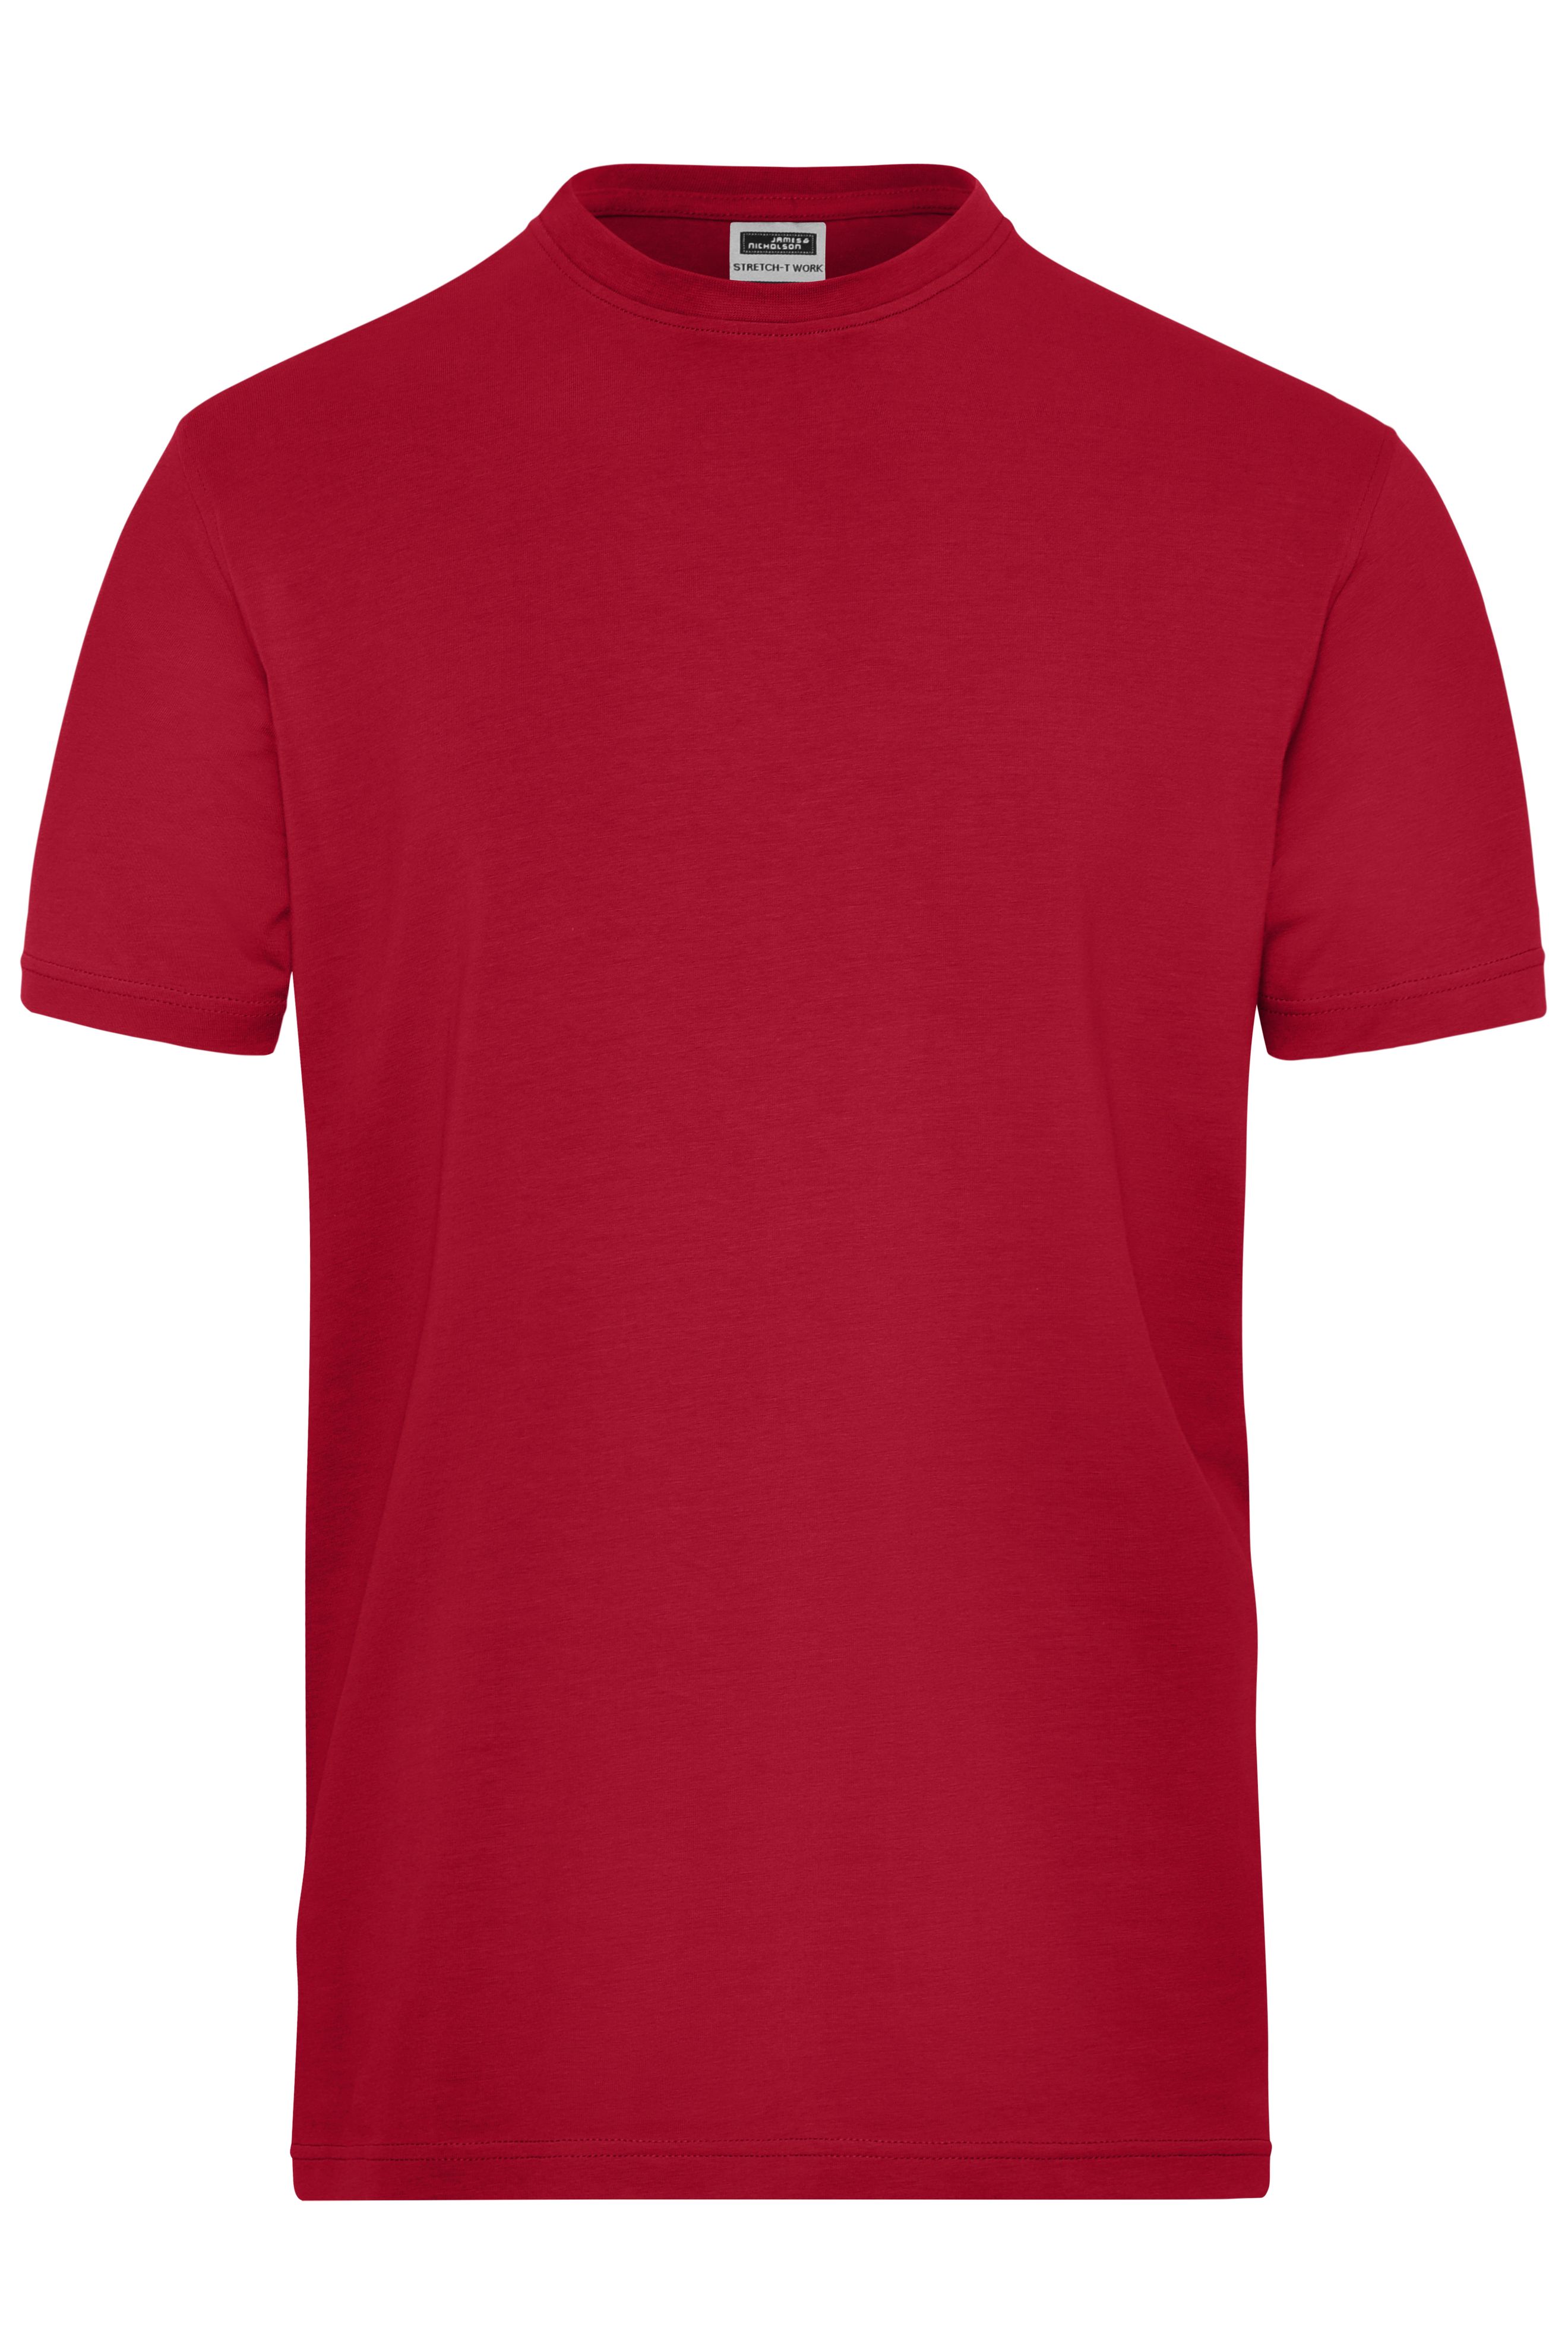 Men's BIO Stretch-T Work - SOLID - JN1802 T-Shirt aus weichem Elastic-Single-Jersey